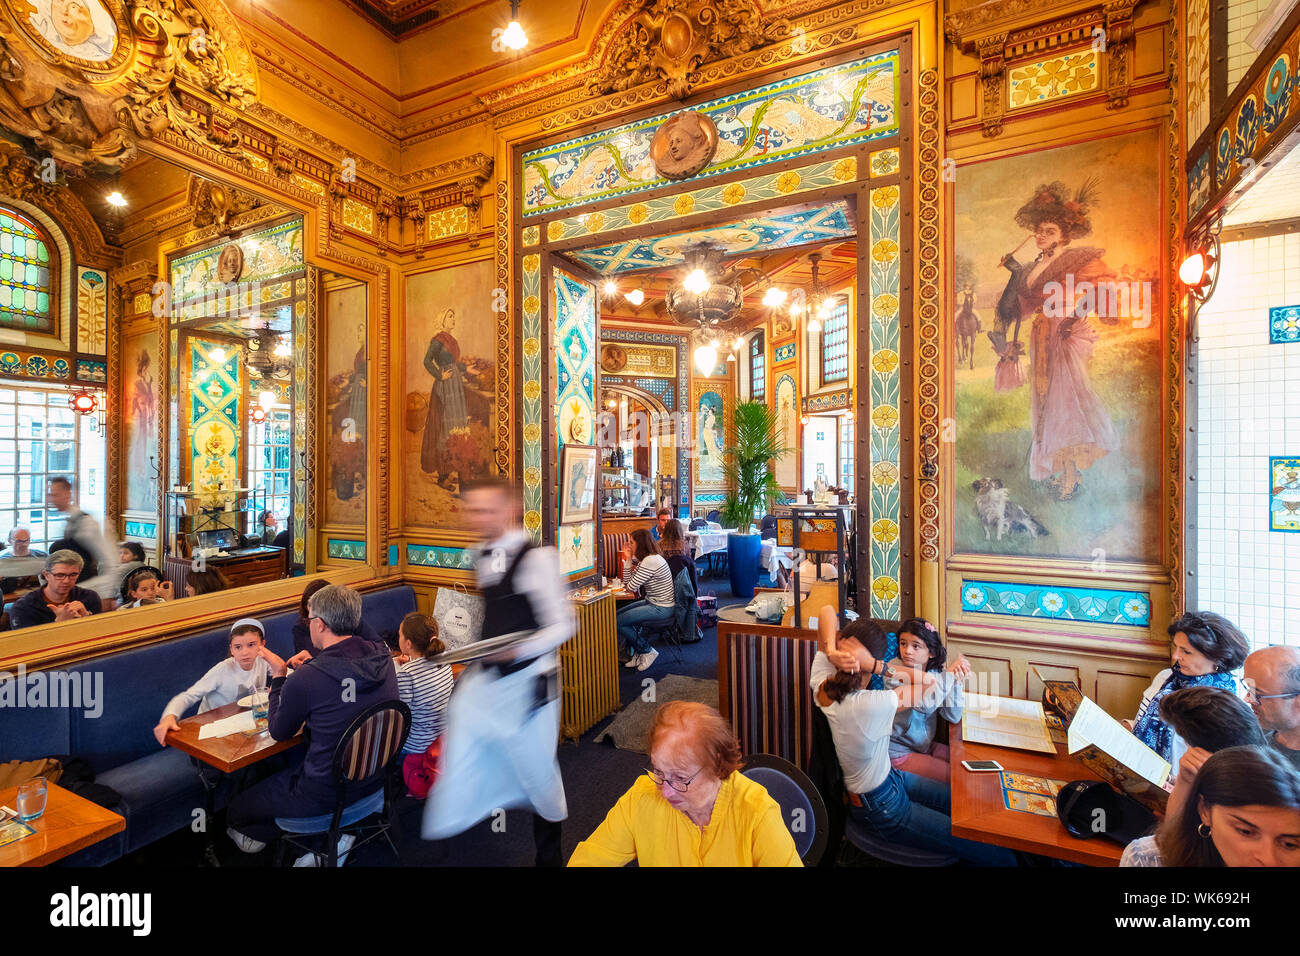 La Cigale Restaurant / Brasserie, Nantes, Pays de la Loire, France, Europe Stock Photo